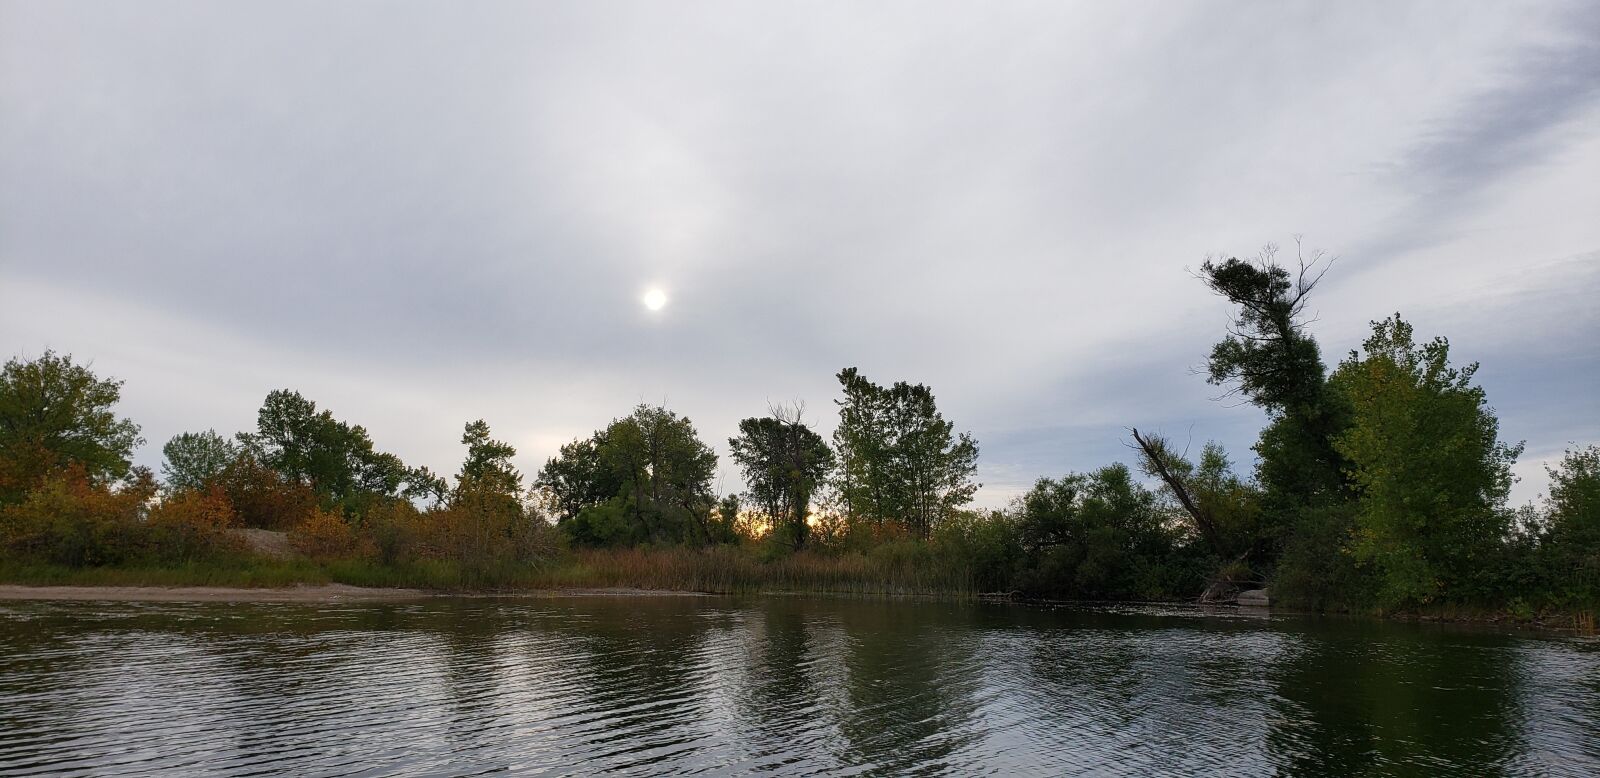 Samsung Galaxy S9+ sample photo. Morning, lake, water photography